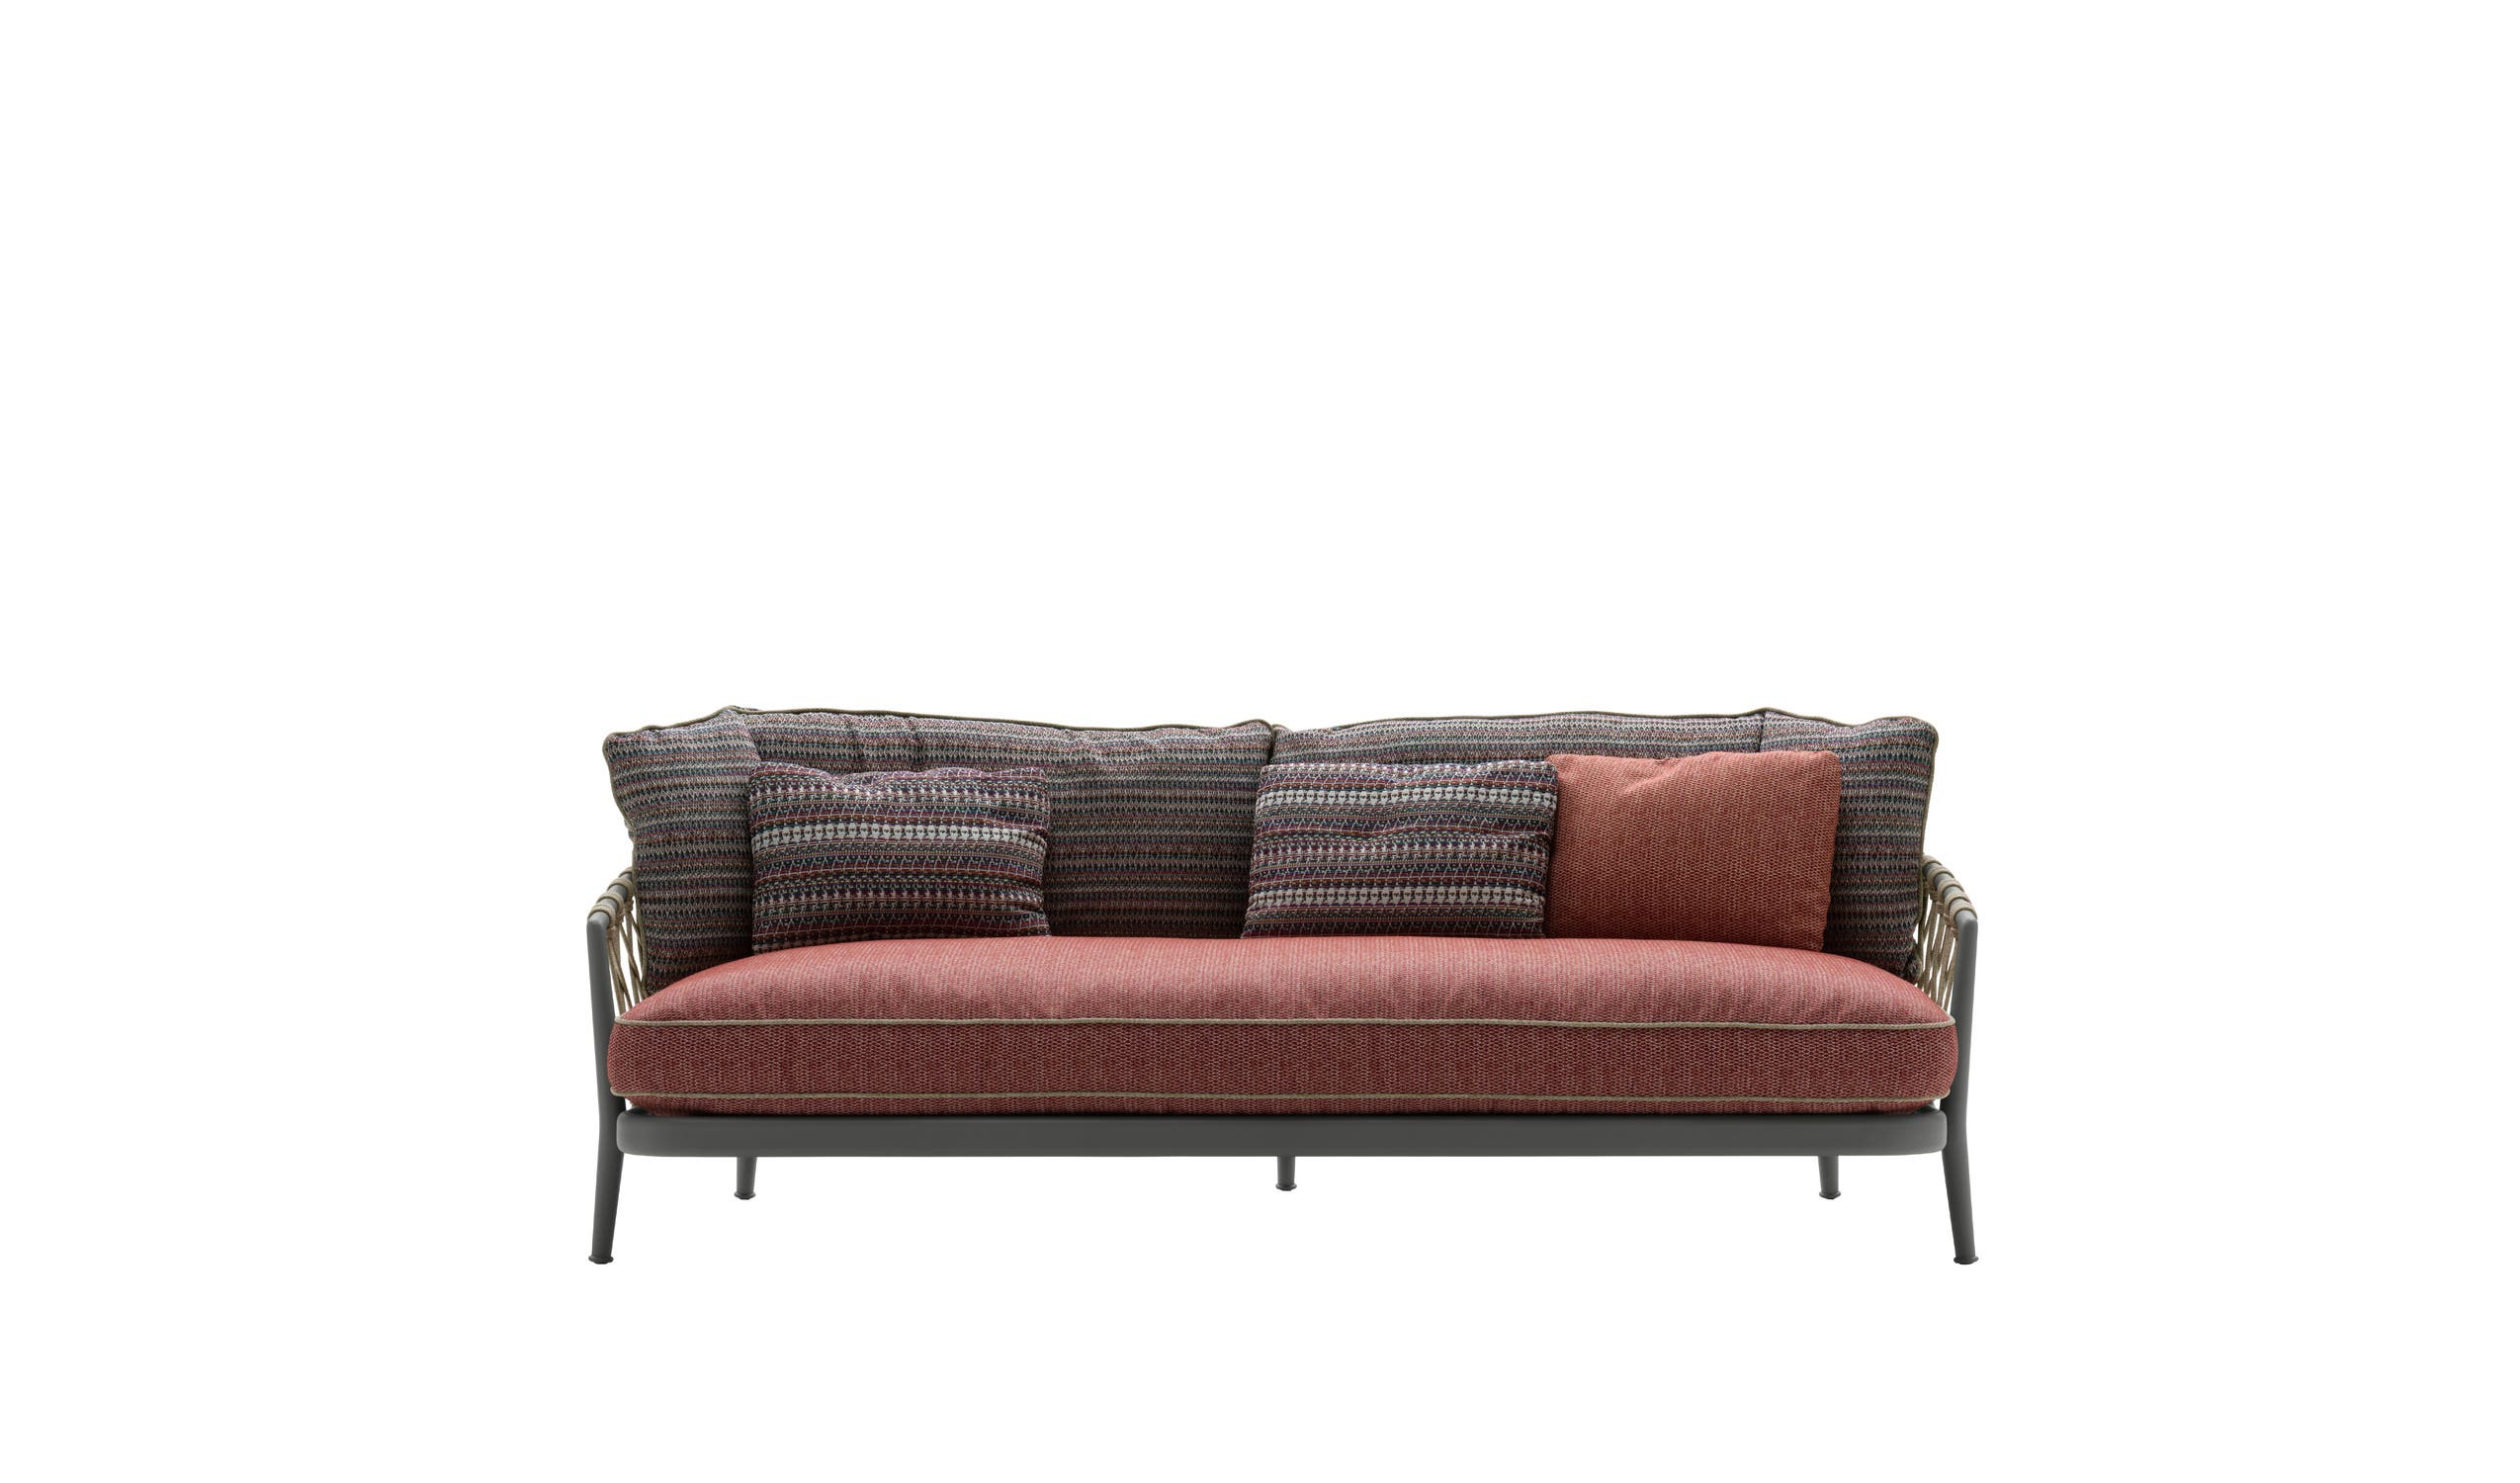 Modern designer italian sofas - Erica '19 Sofas 1